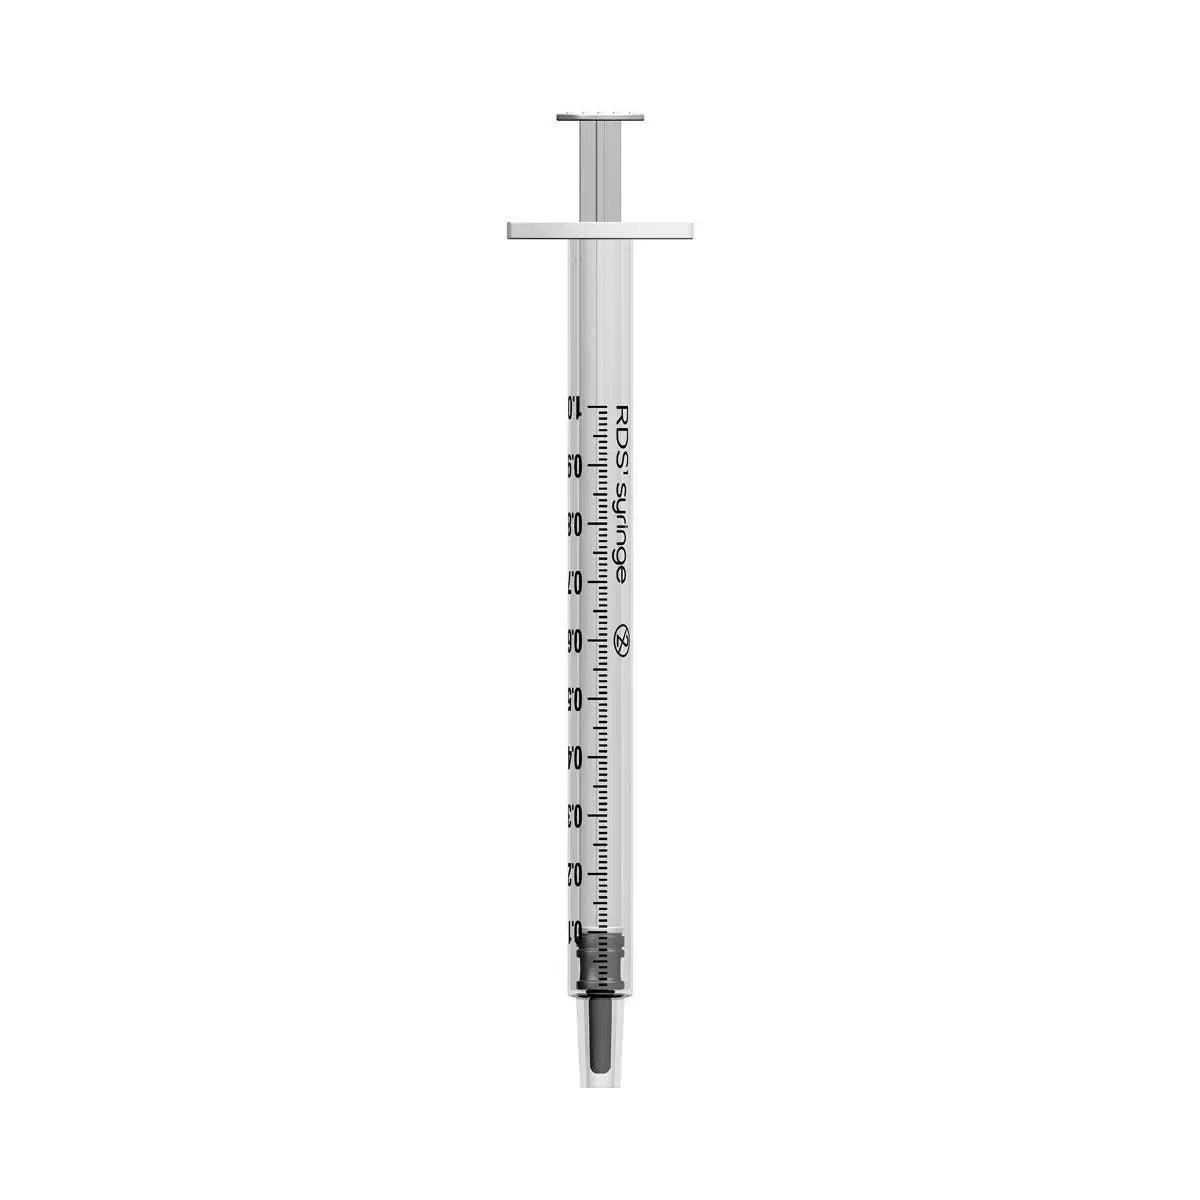 1ml Terumo Luer Slip Syringes - UKMEDI